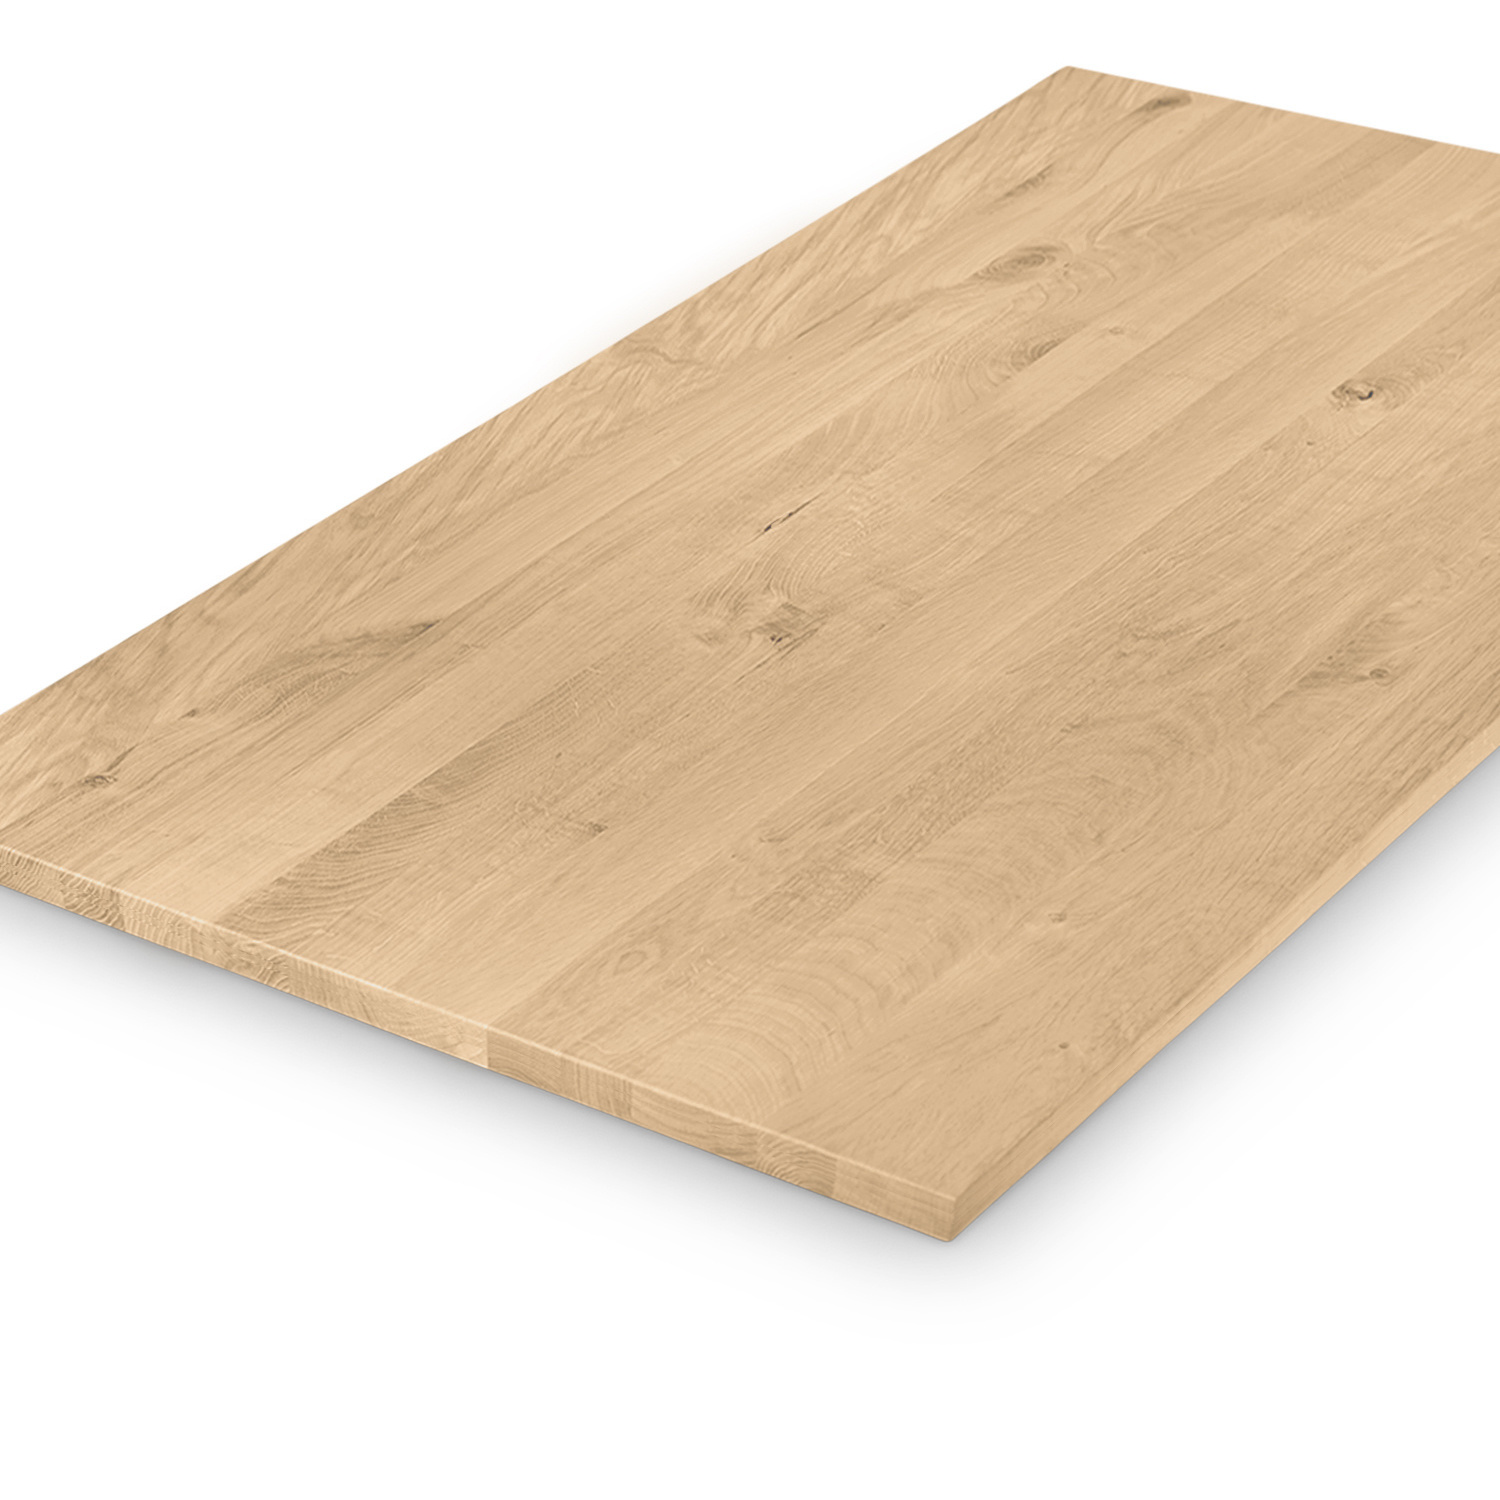  Eiken tafelblad op maat - 2,3 cm dik (1-laag) - rustiek Europees eikenhout - verlijmd kd 8-12% - 50-120x50-260 cm